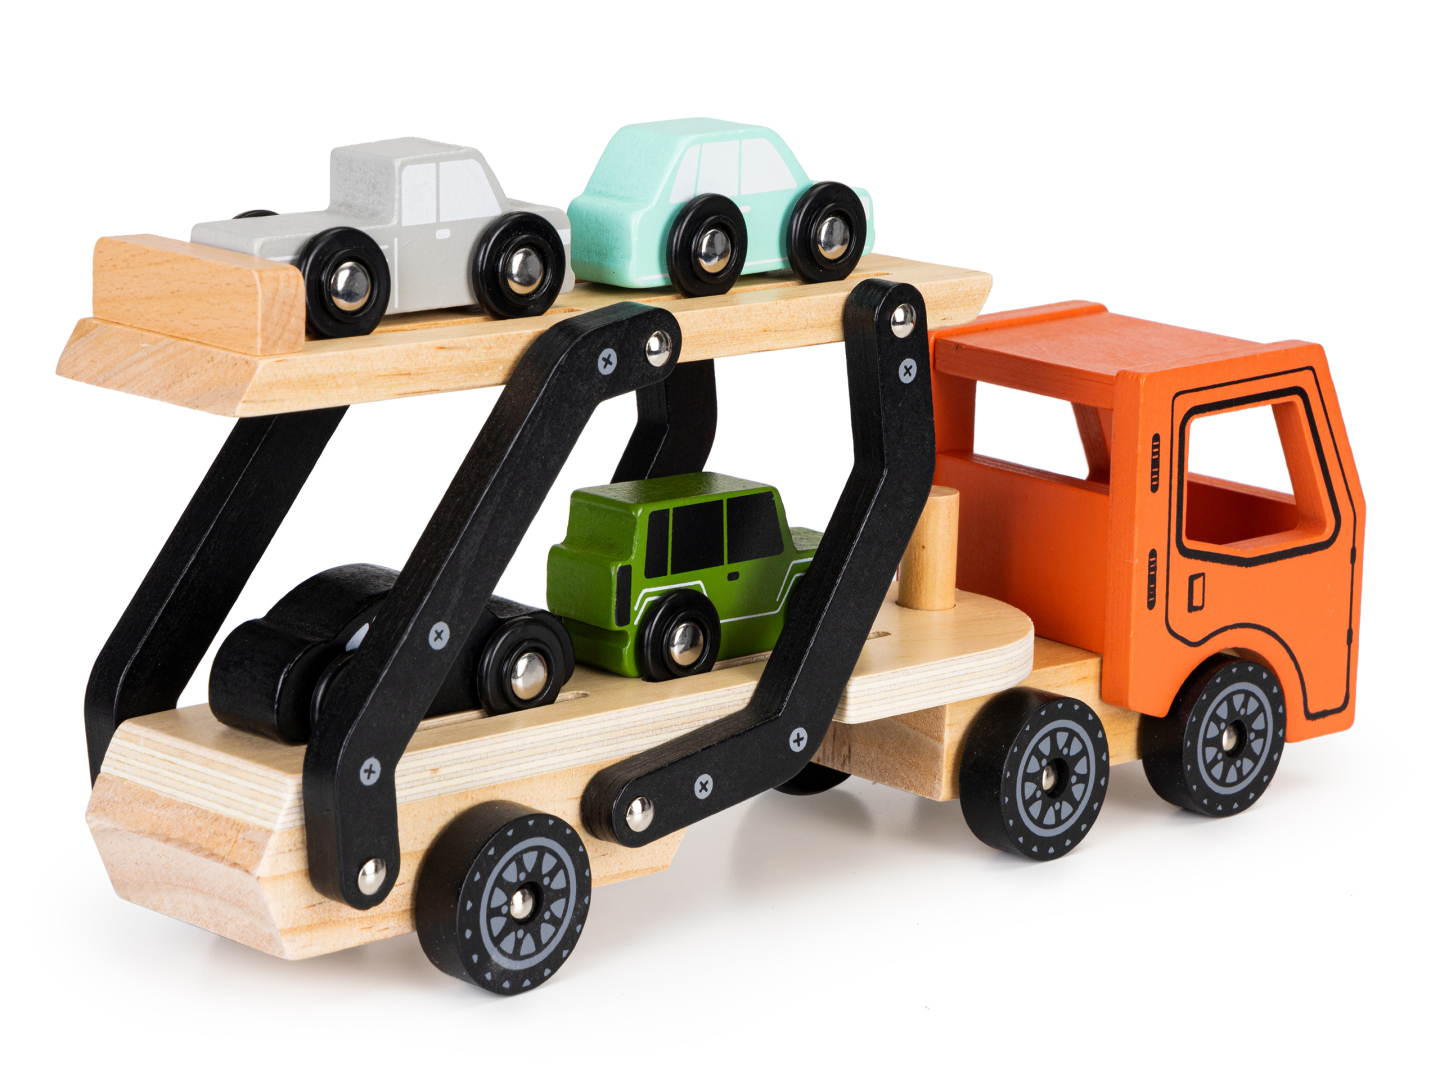 Set interactiv Camion cu 4 masinute diferite, +3 ani, Lemn, Smartic®, multicolor [5]